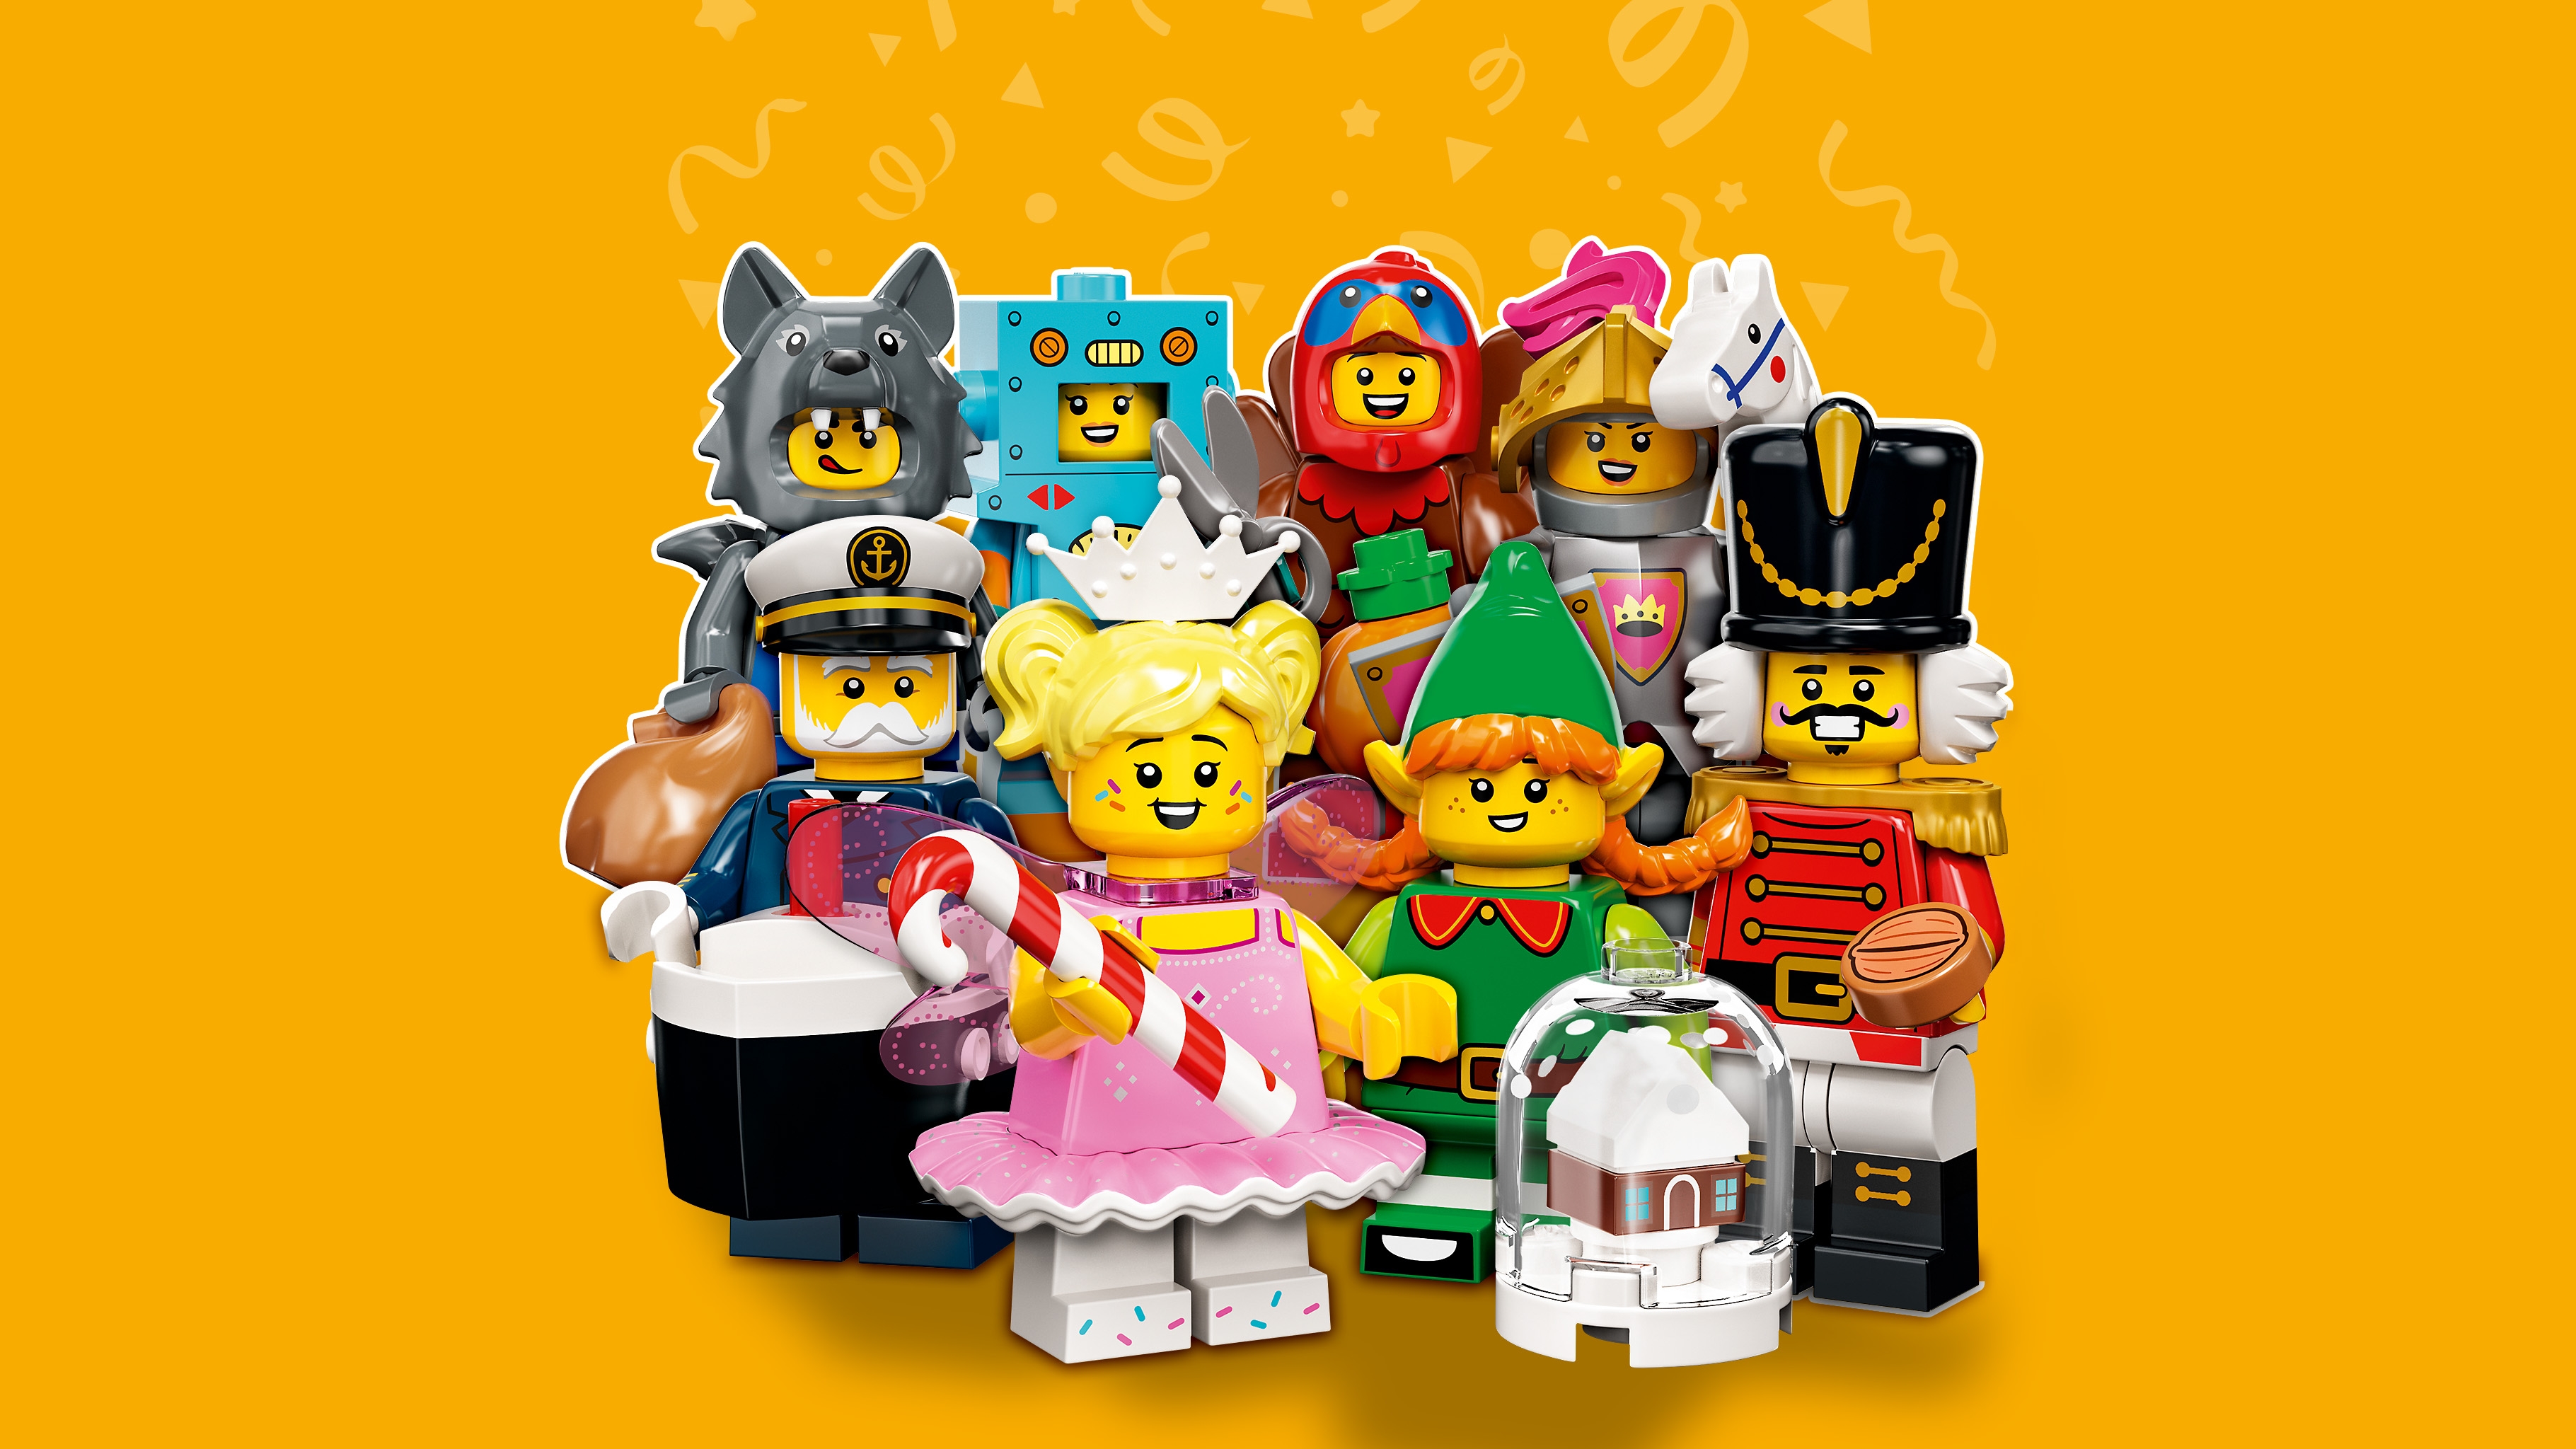 Series 23 71034 LEGO® Minifigures LEGO.com for kids